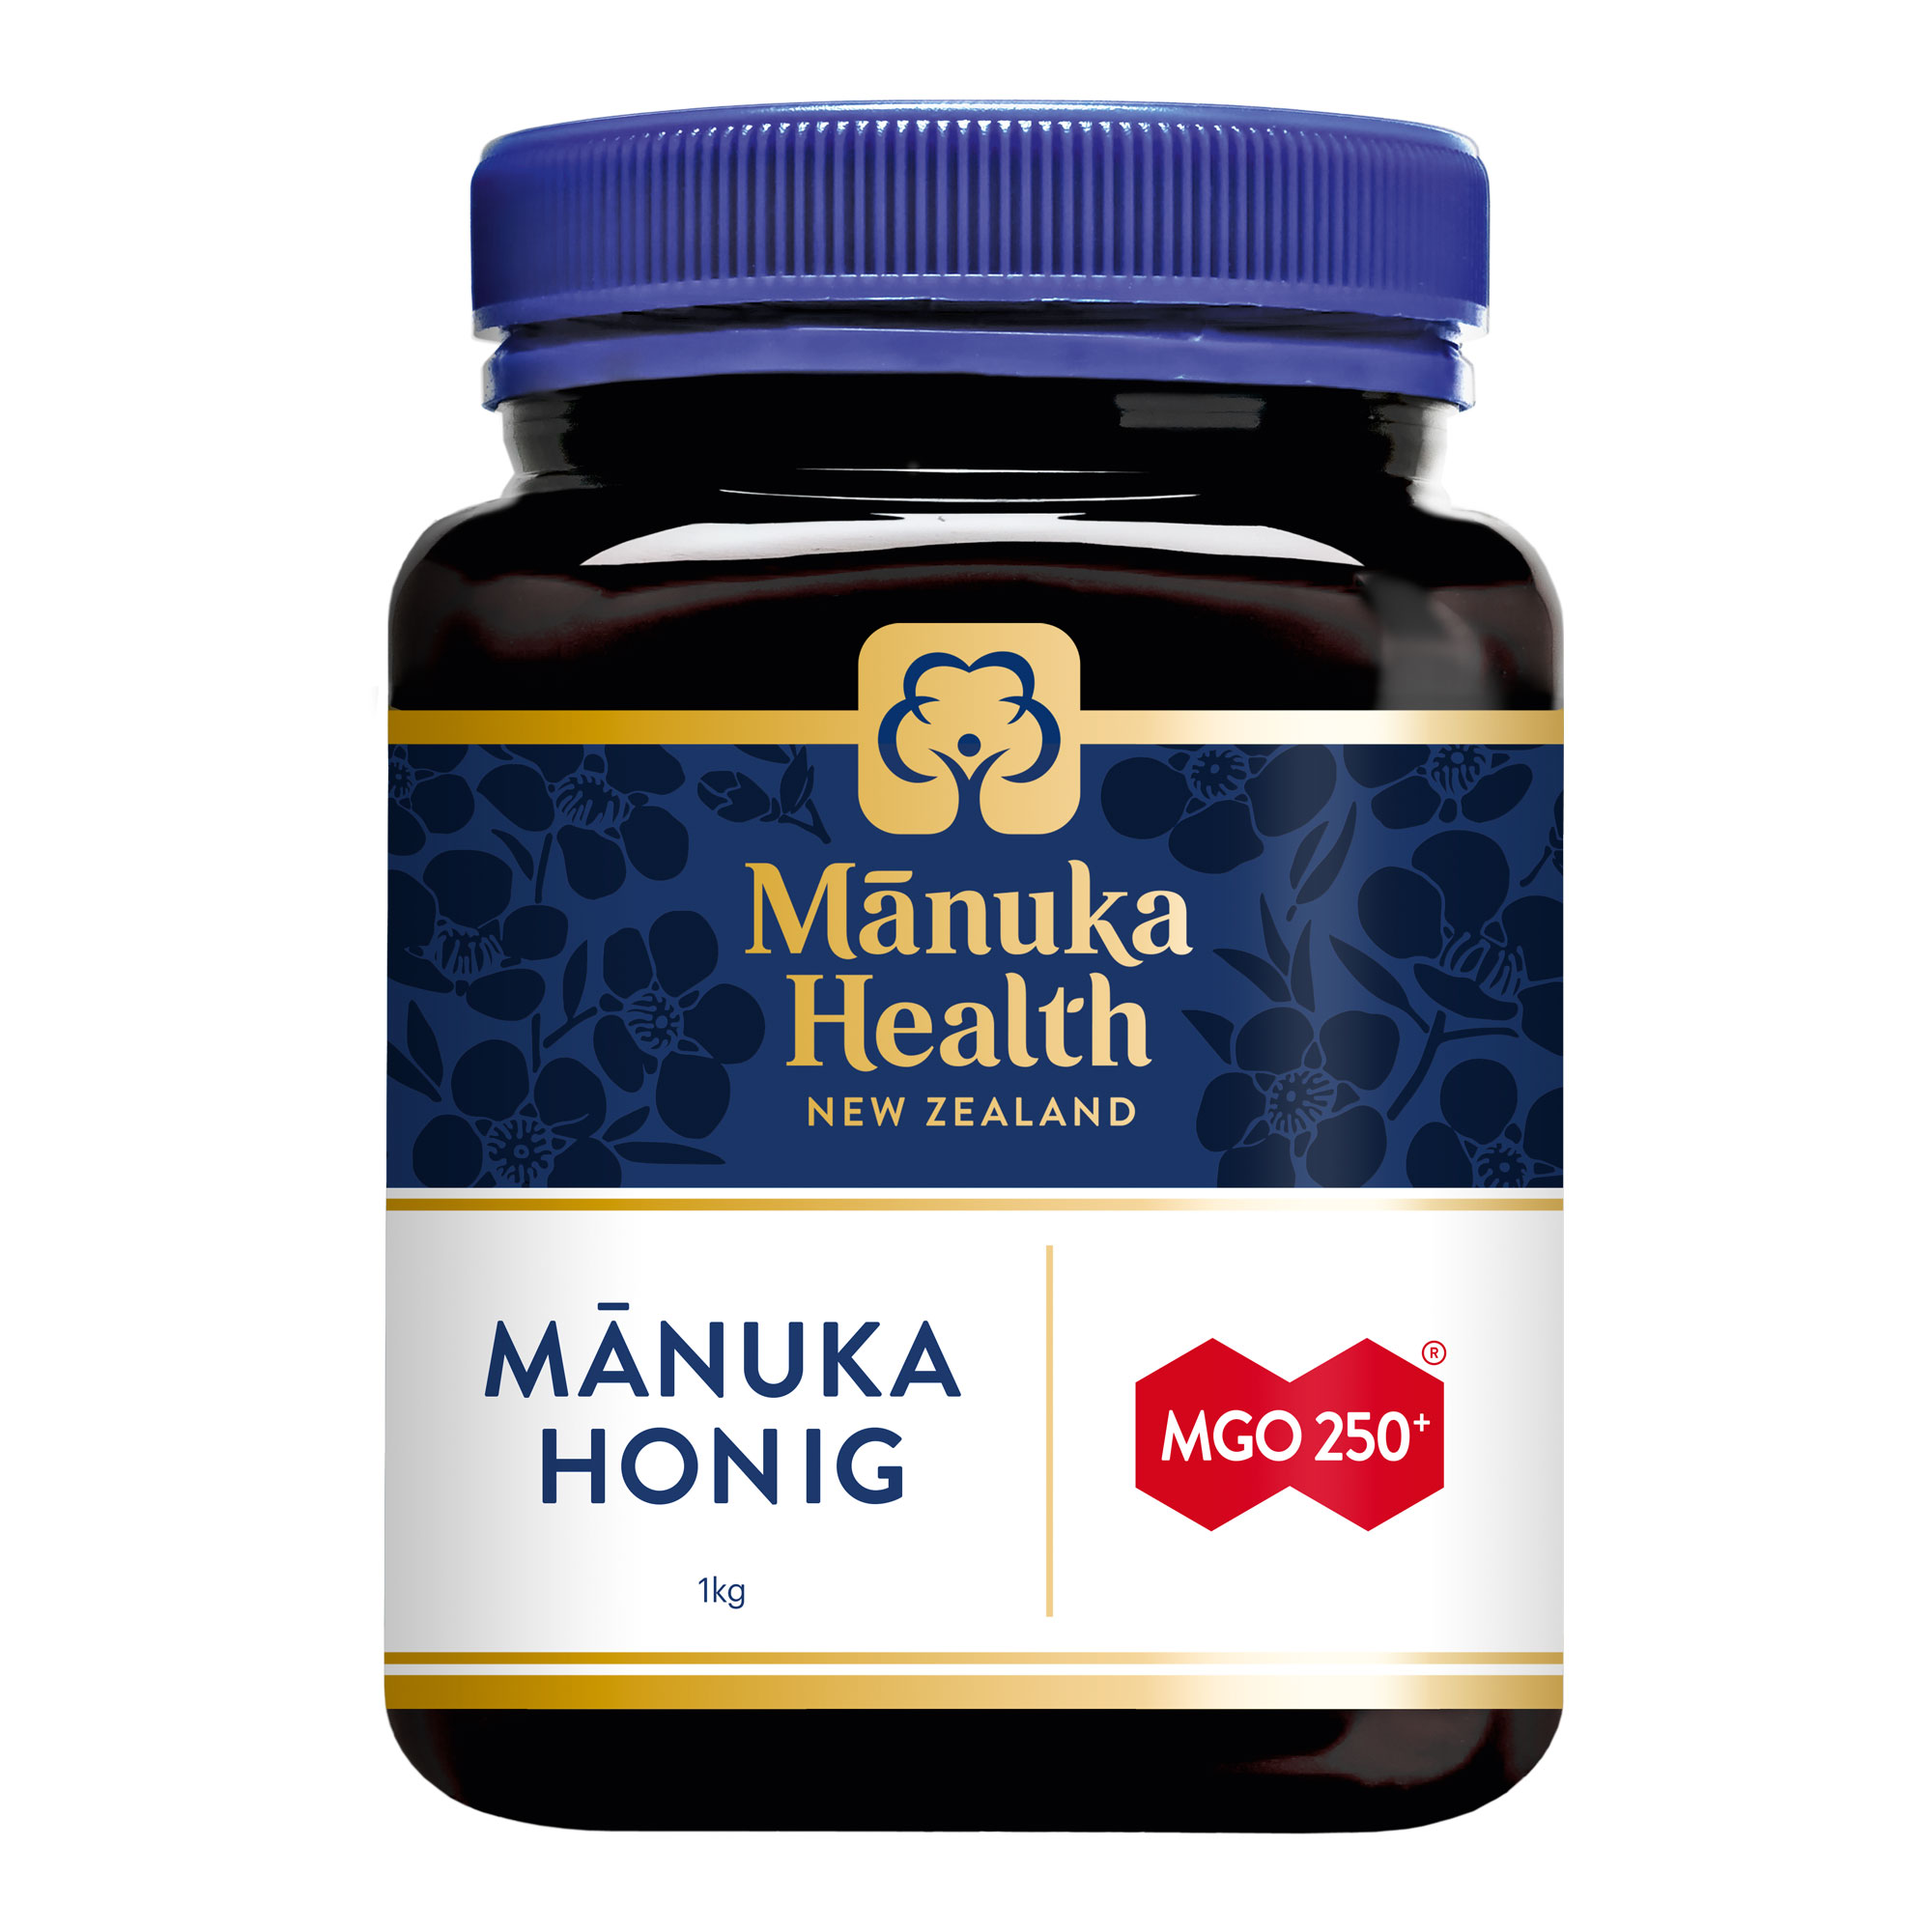 Manuka Honig zur Stärkung des allgemeinen Wohlbefindens. Mit Gehalt von mindestens 250 mg MGO.